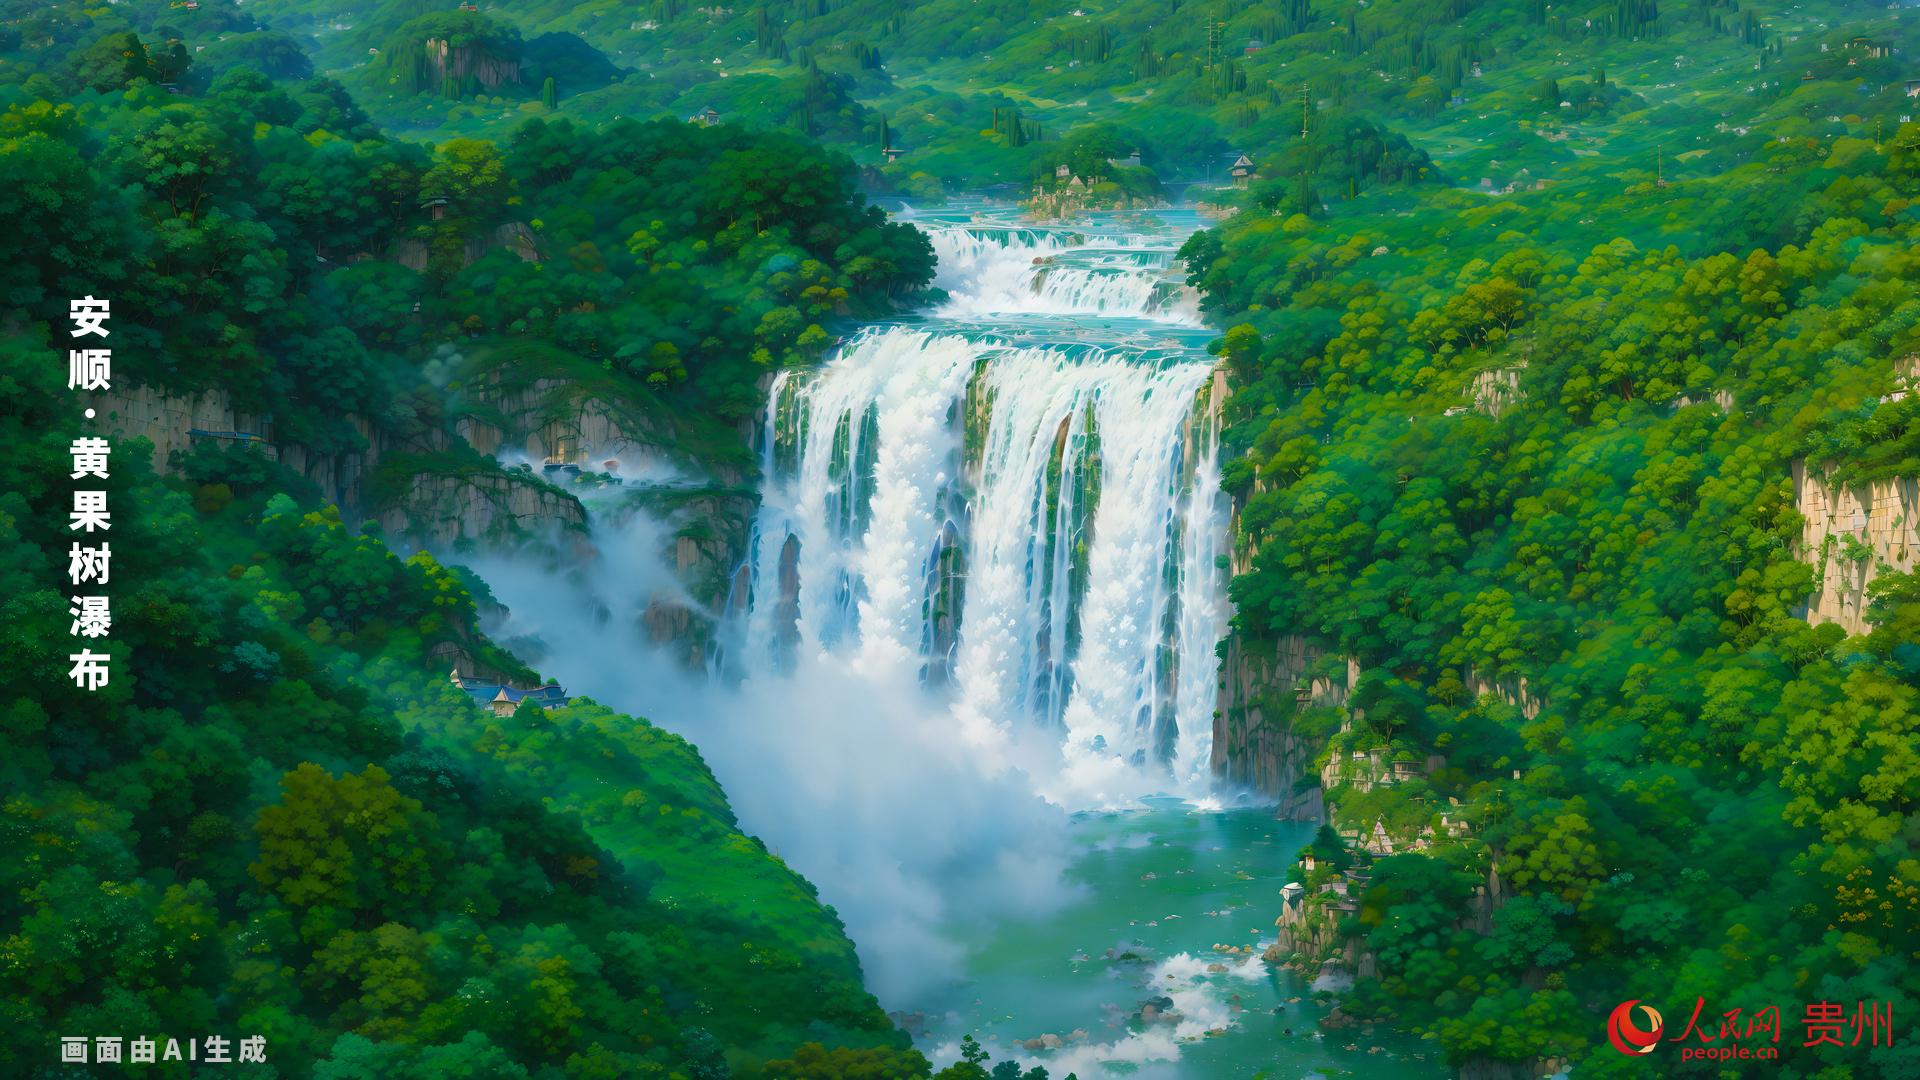 位於中國貴州省安順市，是世界著名大瀑布之一，以水勢浩大著稱。